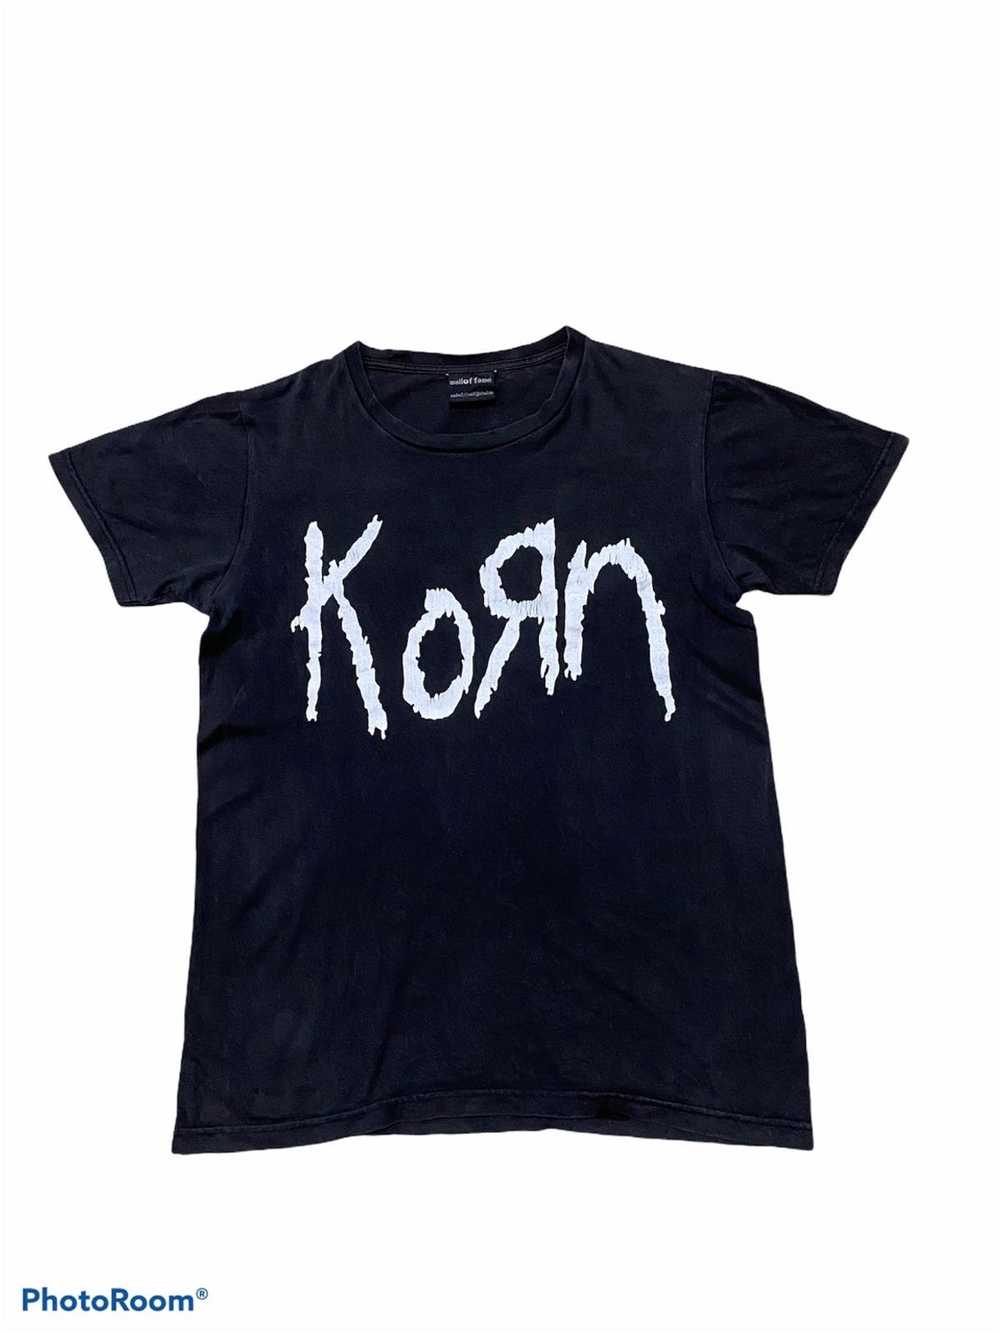 Band Tees × Rock Band × Vintage Rare Korn T-shirt - image 2